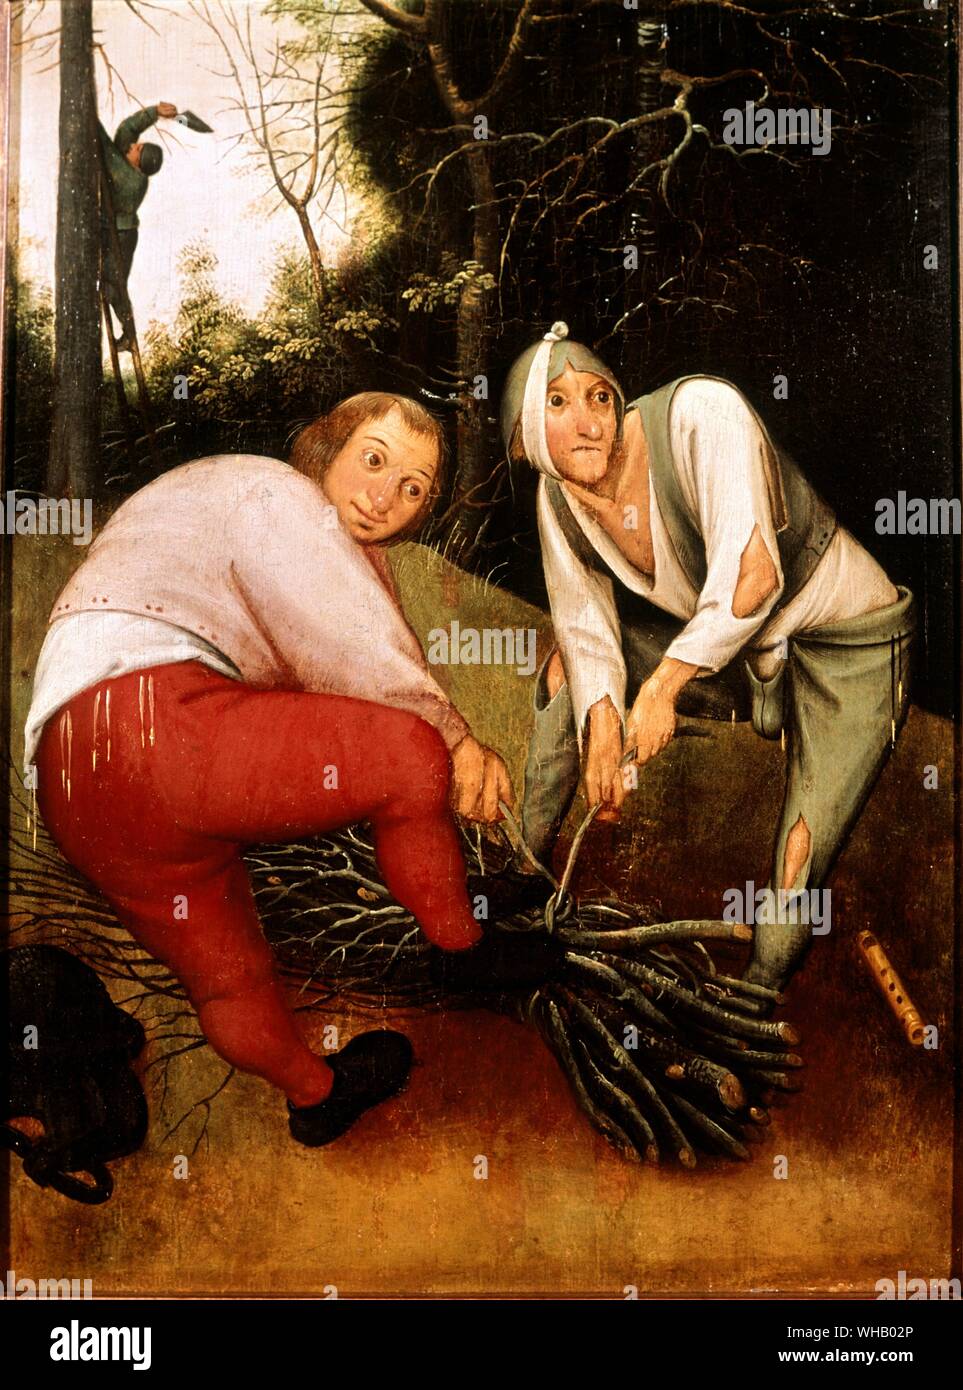 Zwei Bauern verbindliche Reisigbündeln. Künstler Pieter Brueghel der Jüngere (1564-1638). in der Barber Fine Arts an der Universität von Birmingham. Pieter Brueghel der Jüngere (1564-1638) war ein flämischen Renaissance Maler, Sohn von Pieter Brueghel der Ältere. Wenn er nur fünf Jahre alt war, starb sein Vater. Pieter Brueghel der Jüngere erhielt seine künstlerische Ausbildung von Flämischen Landschaftsmaler Gilles van Coninxloo. Brueghel später auch heiratete die Schwester seines Meisters.. Pieter Brueghel der Jüngere wurde ein Meister im Jahr 1585. Dann begann er Malerei Landschaften, religiöse Themen und Fantasy Stockfoto